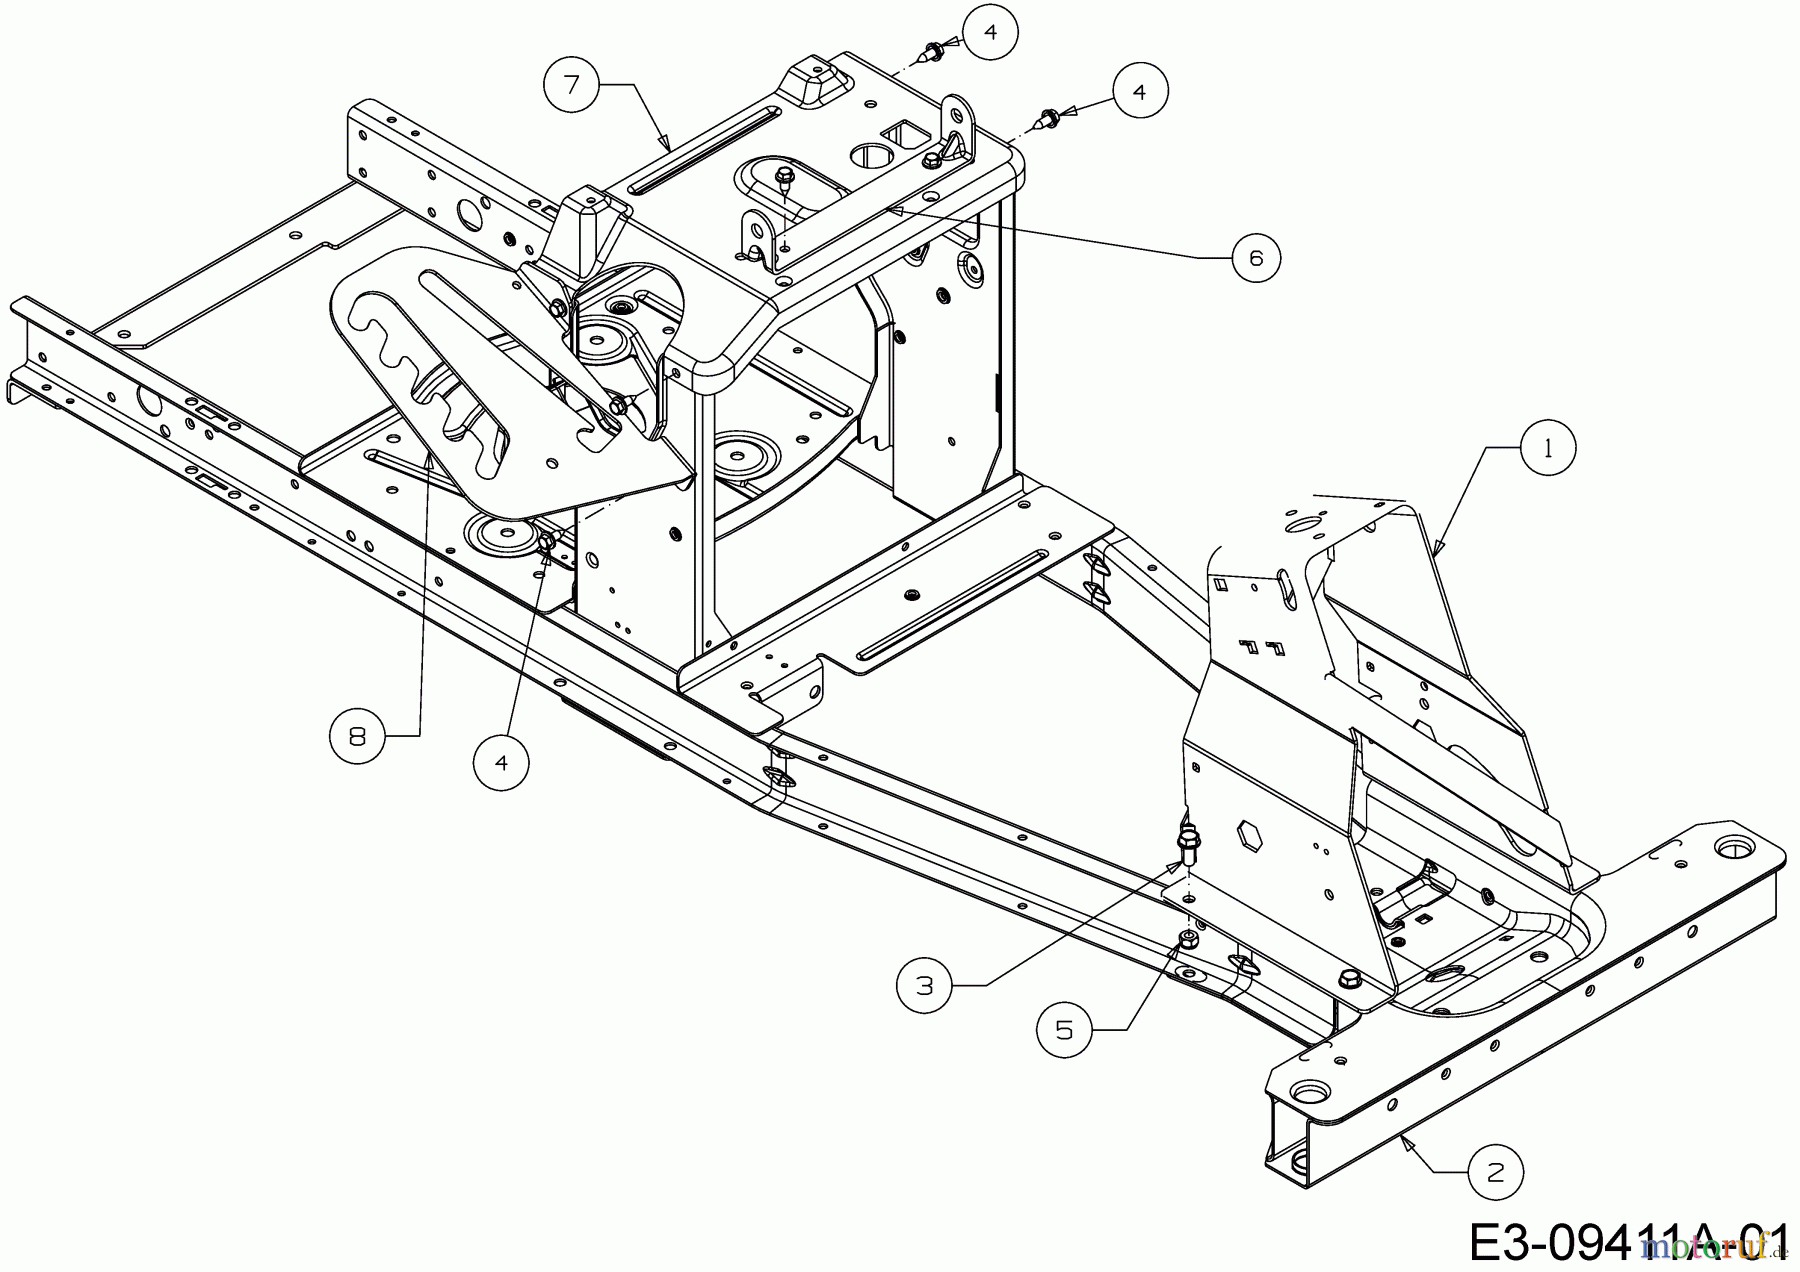  WOLF-Garten Expert Rasentraktoren Scooter Pro Hydro 13A221HD650  (2017) Rahmen